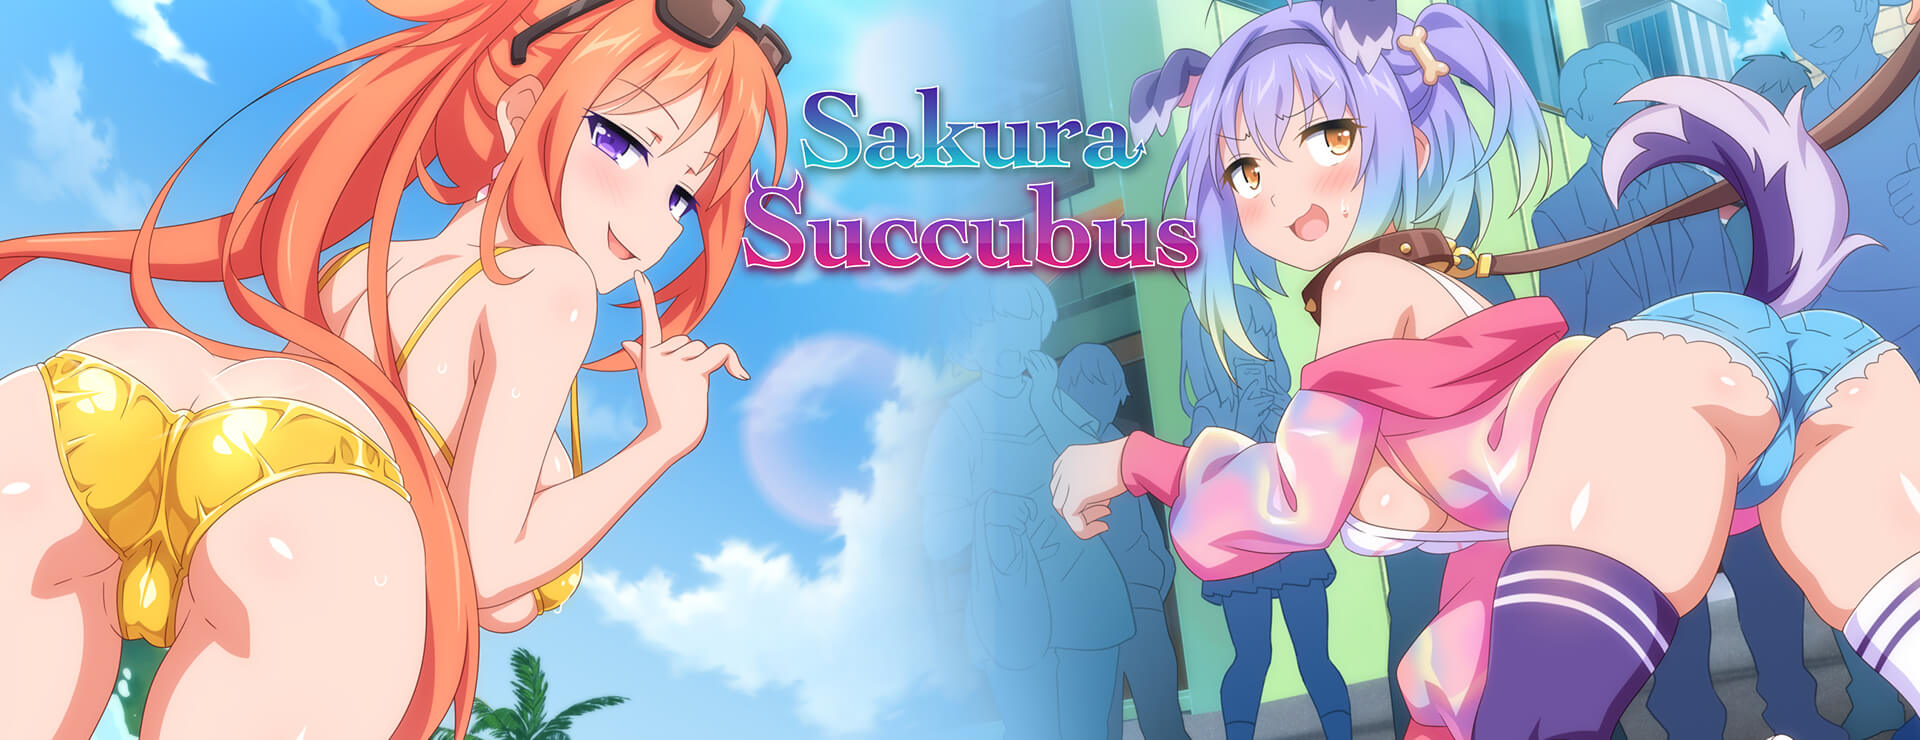 Sakura Succubus - Powieść wizualna Gra